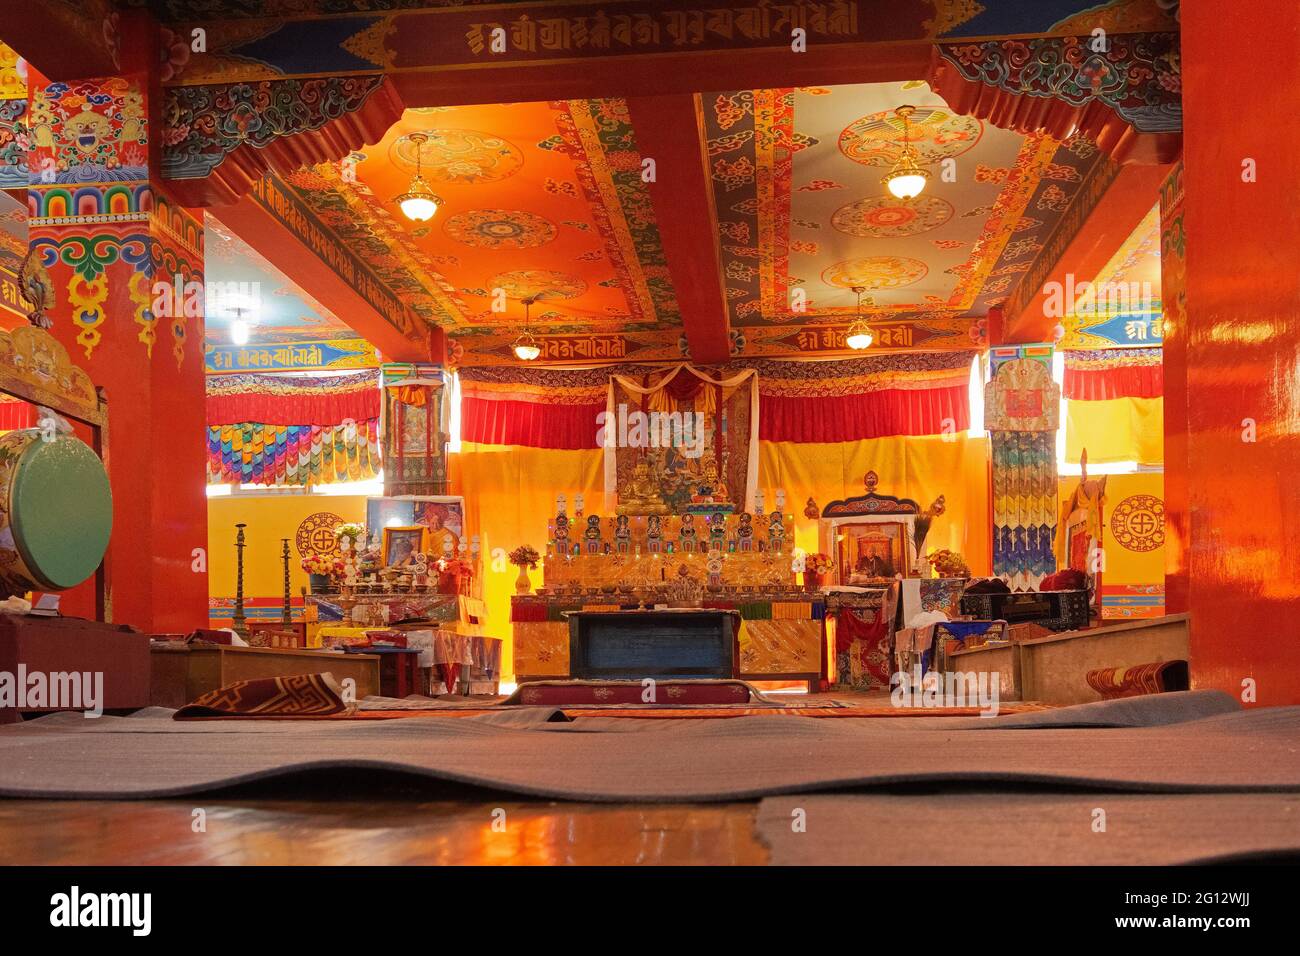 Monastère de Samdruptse, Ravangla, Sikkim, Inde - 20 octobre 2016 : vue intérieure du monastère bouddhiste de Samdruptse, Sikkim, Inde. Banque D'Images